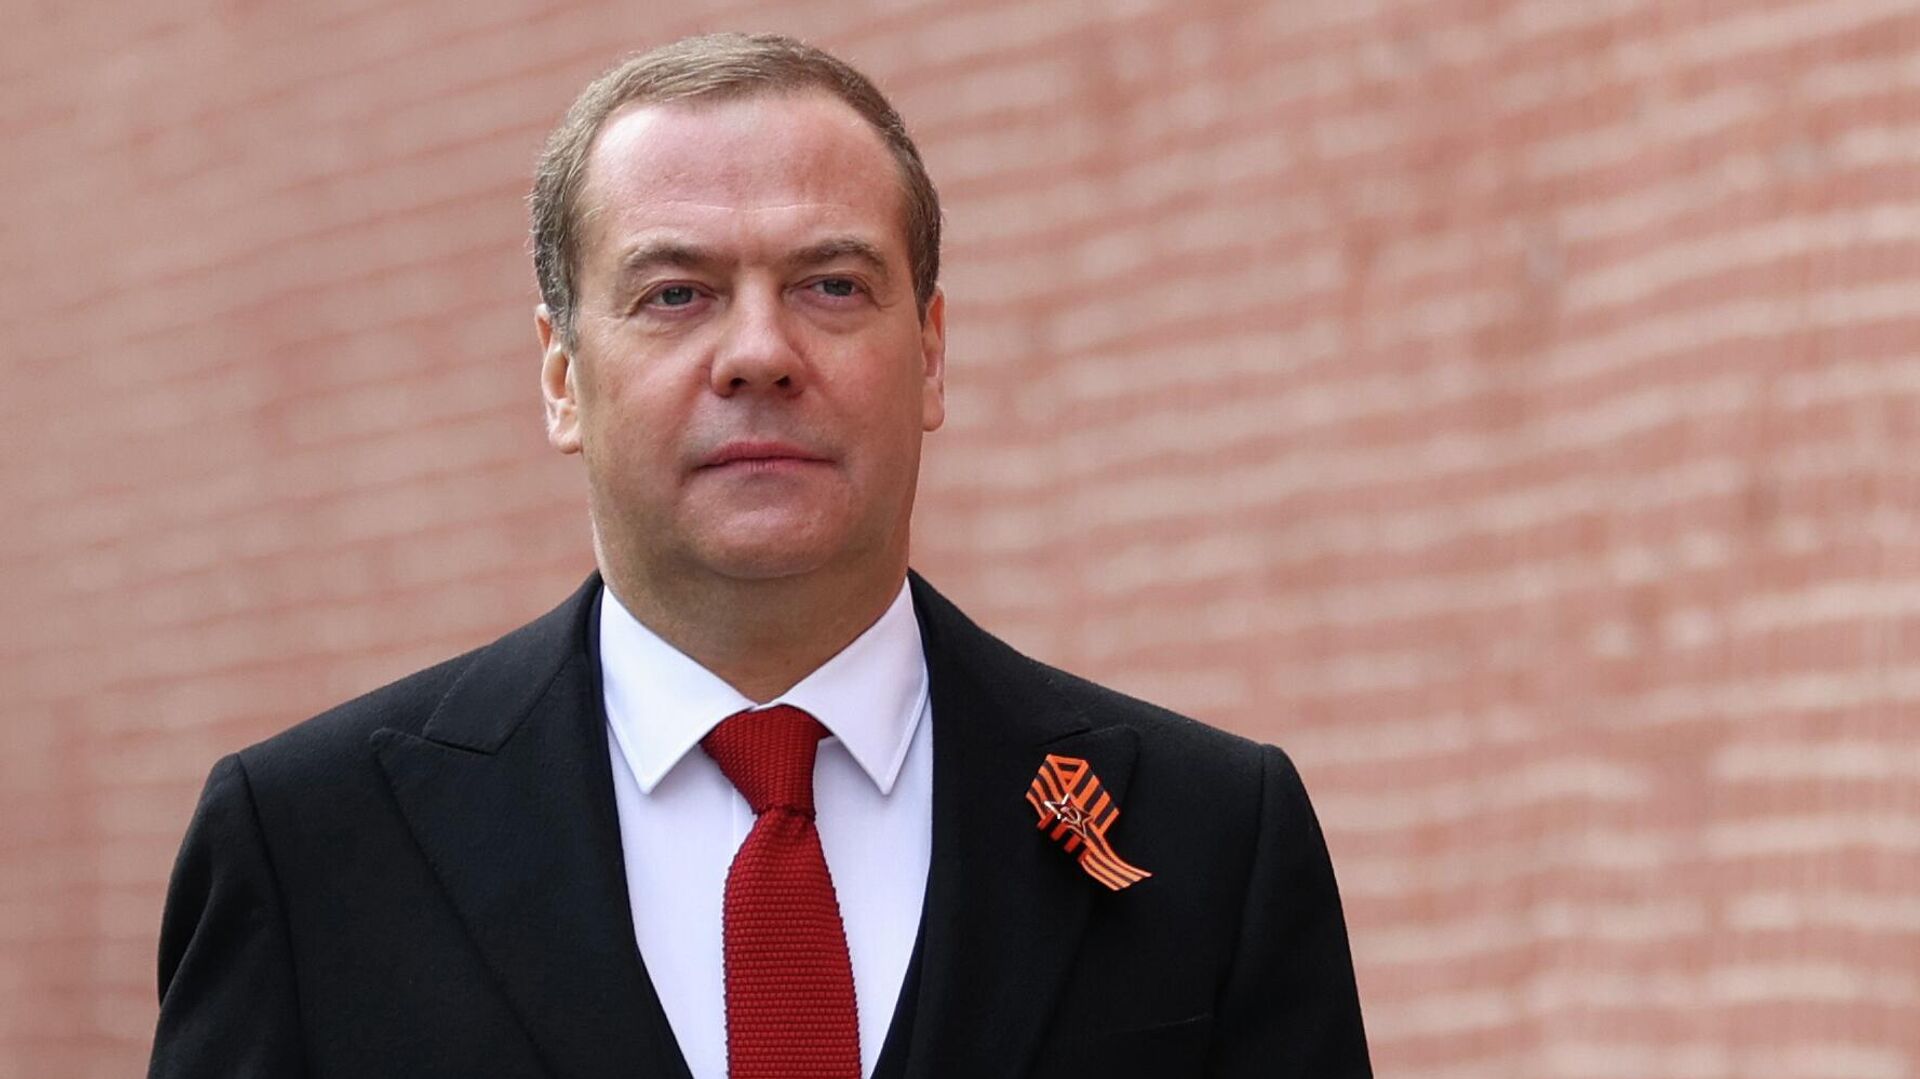 Phó Chủ tịch Hội đồng An ninh Nga Dmitry Medvedev trước lễ duyệt binh trên Quảng trường Đỏ kỷ niệm 77 năm chiến thắng trong Chiến tranh Vệ quốc Vĩ đại. - Sputnik Việt Nam, 1920, 13.05.2022